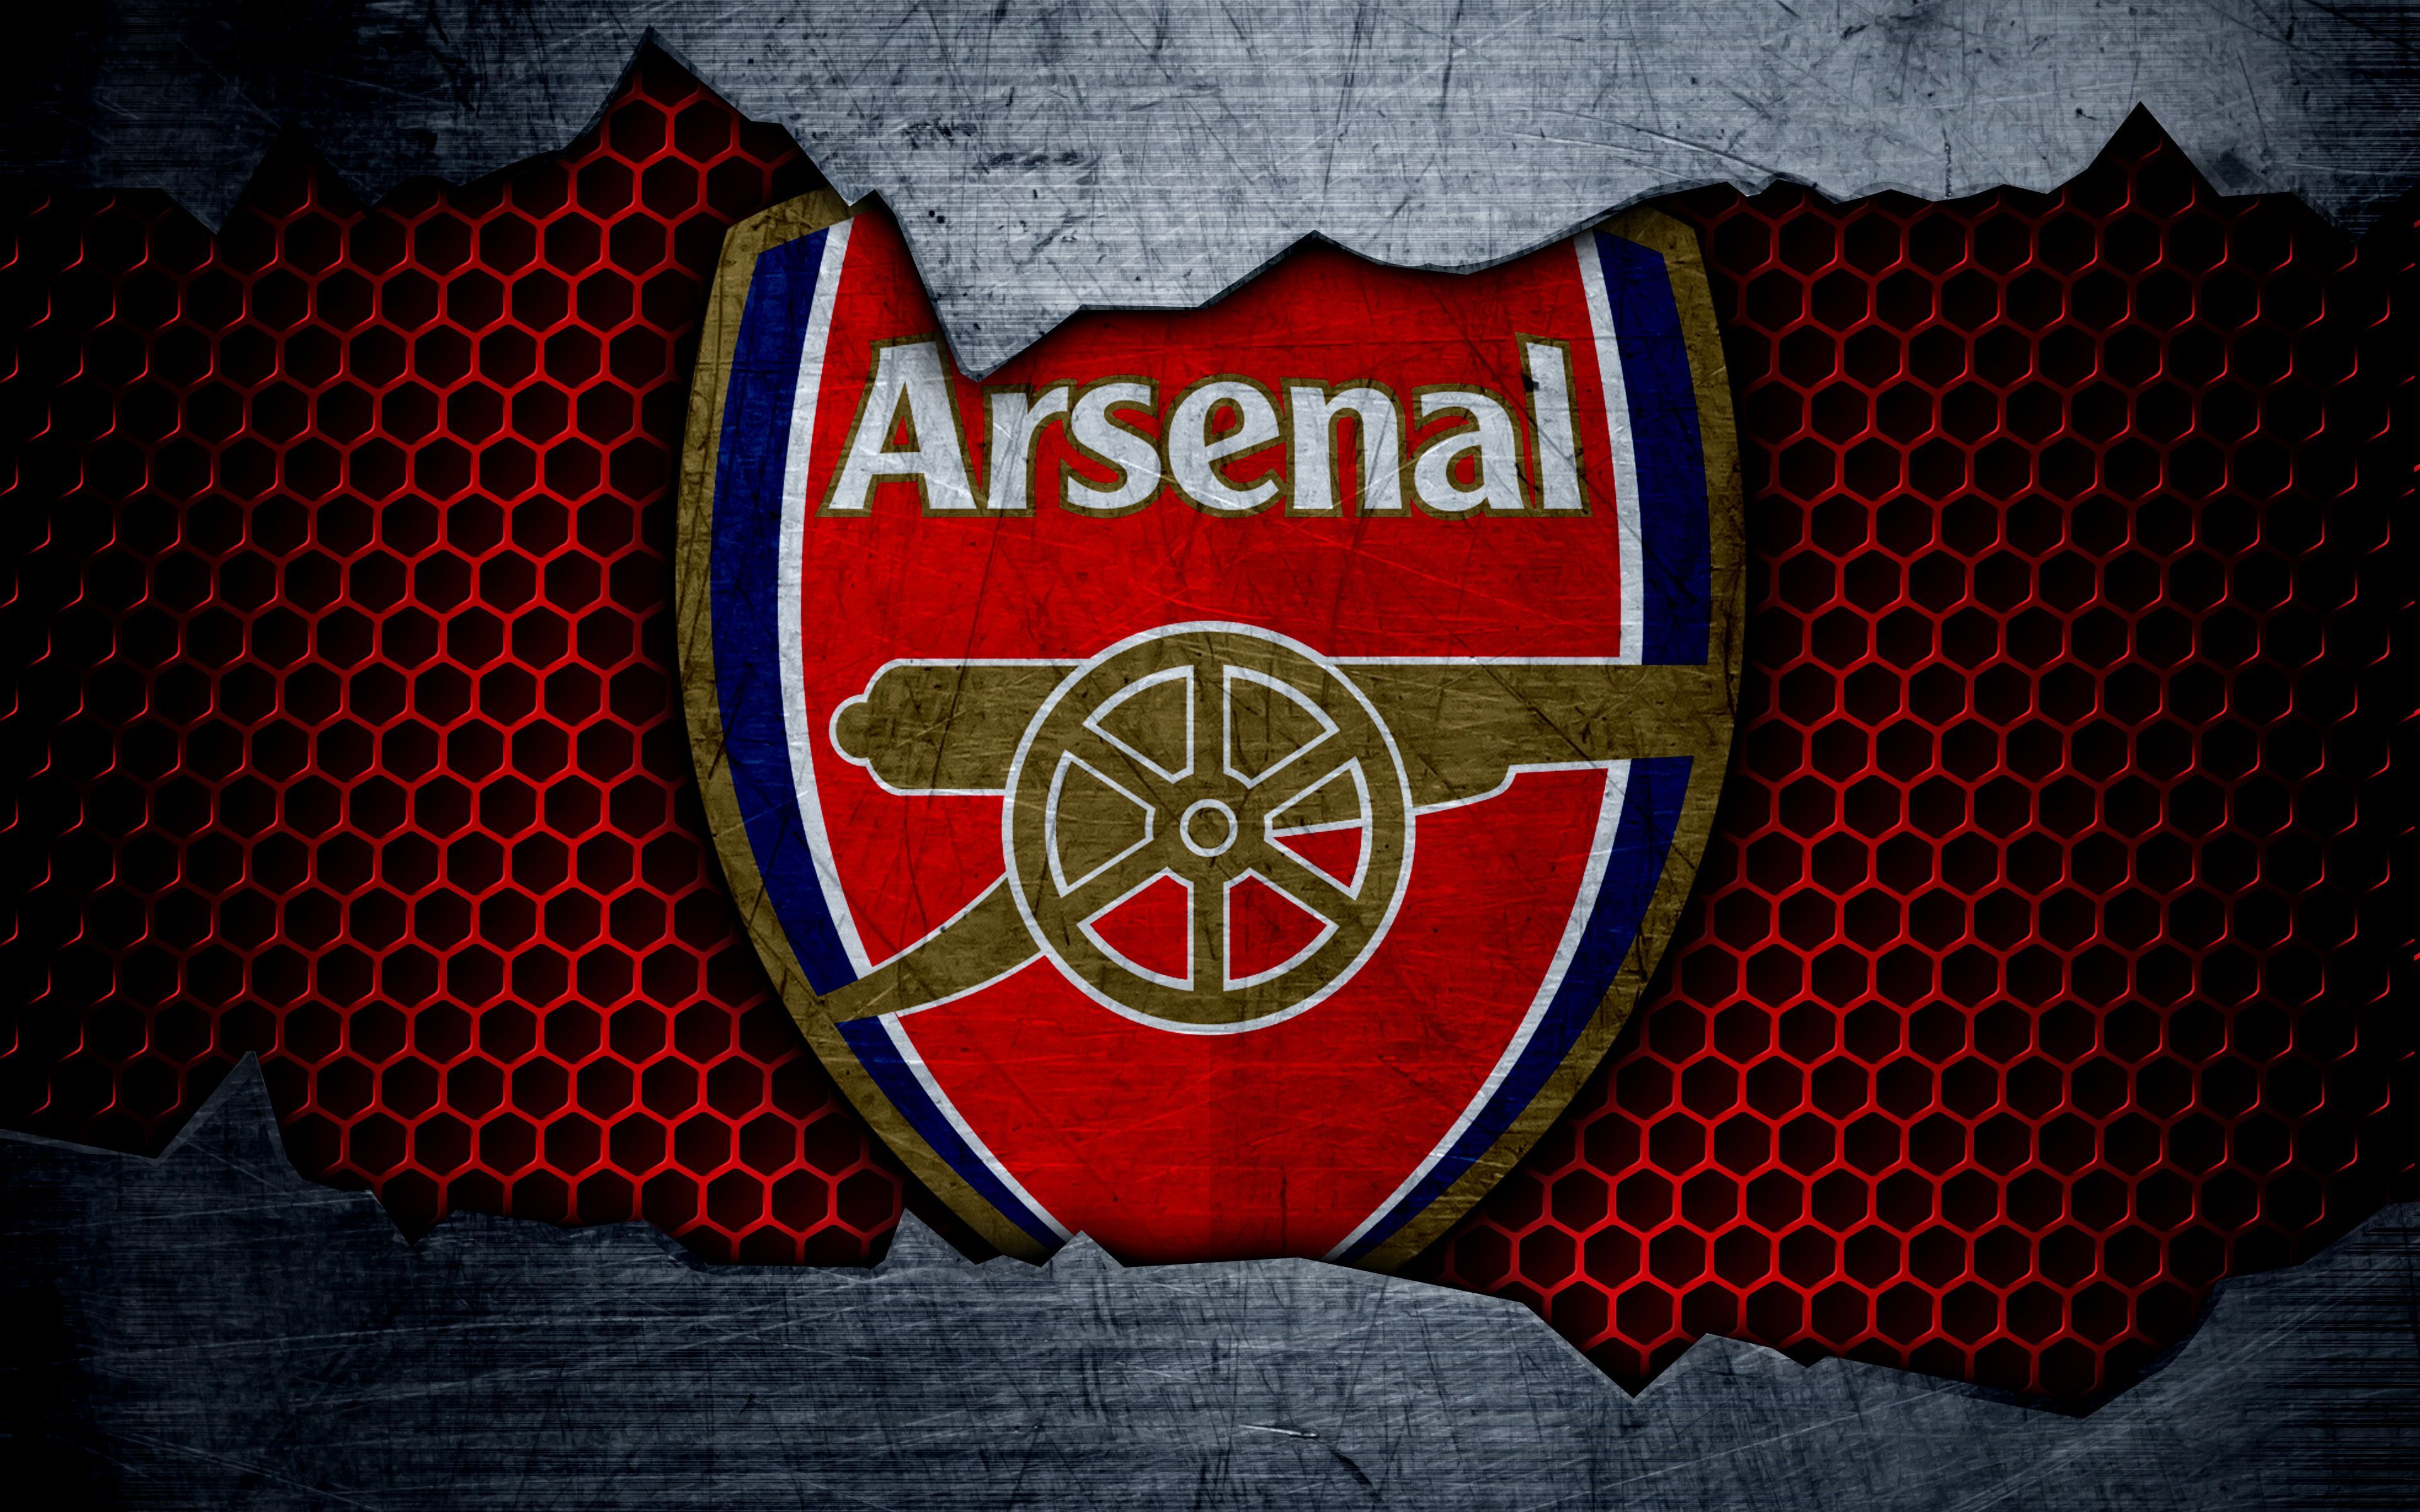 Arsenal 4K Wallpaper Free Arsenal 4K Background